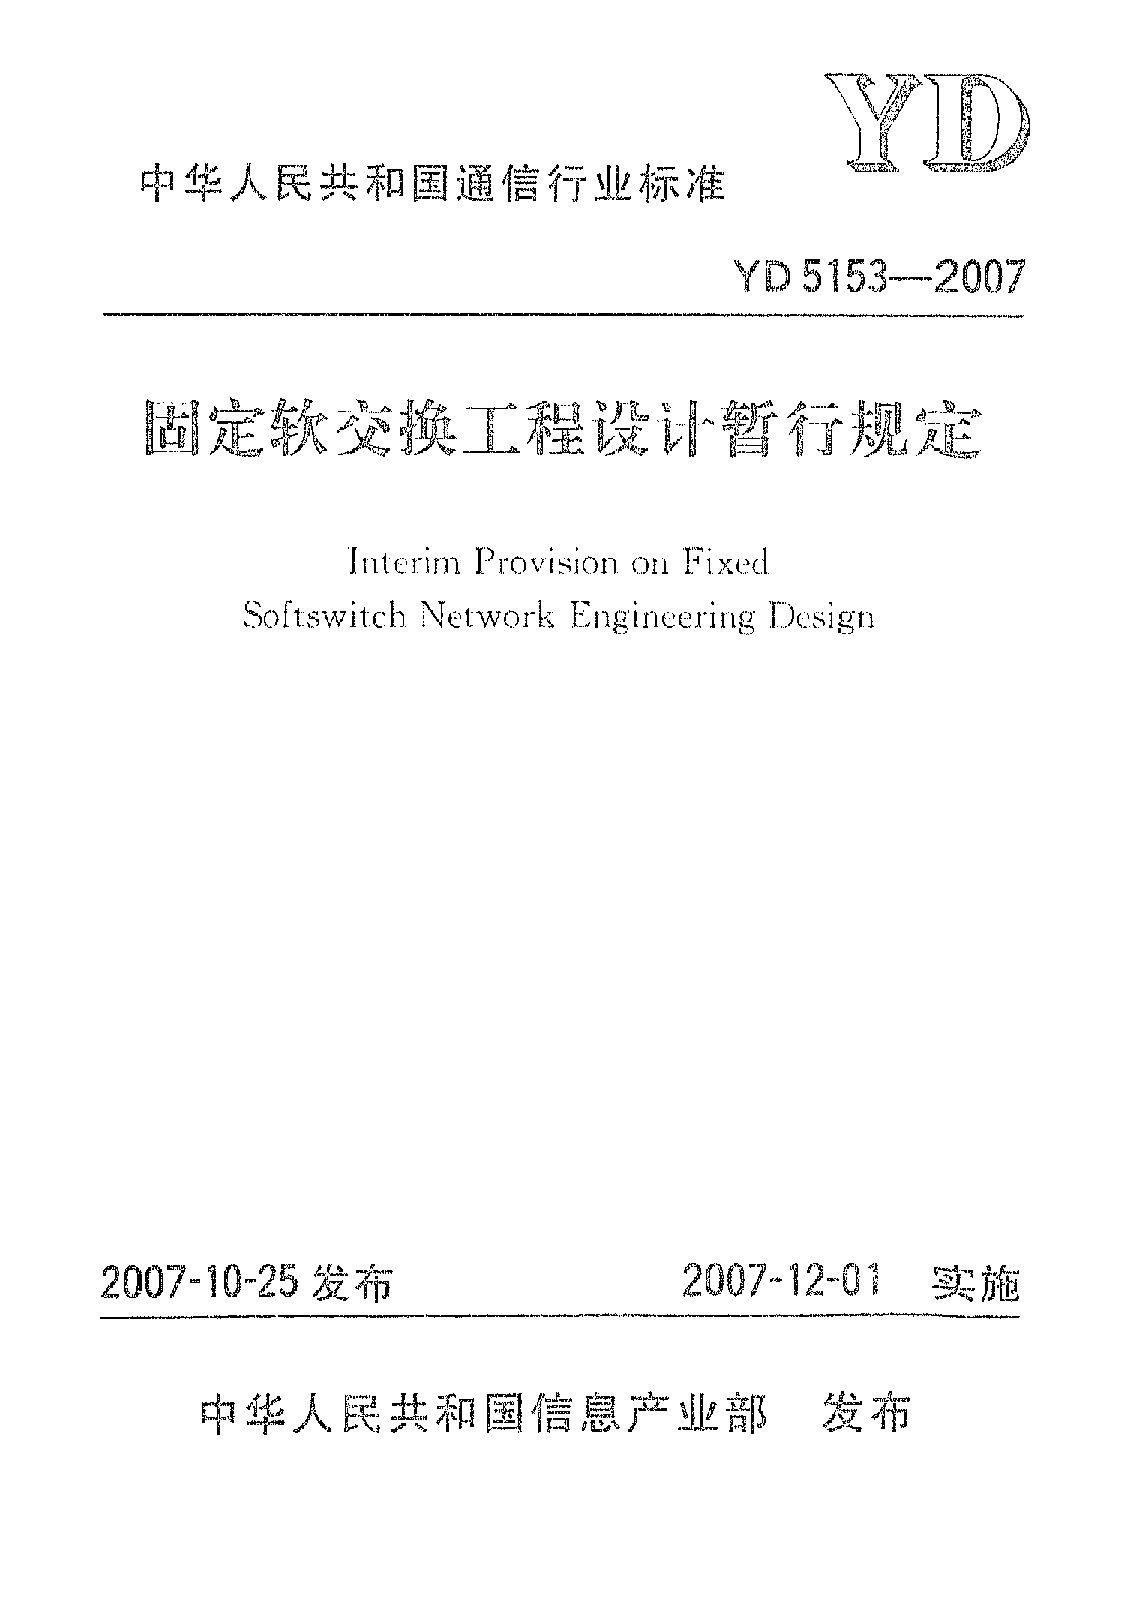 YD 5153-2007